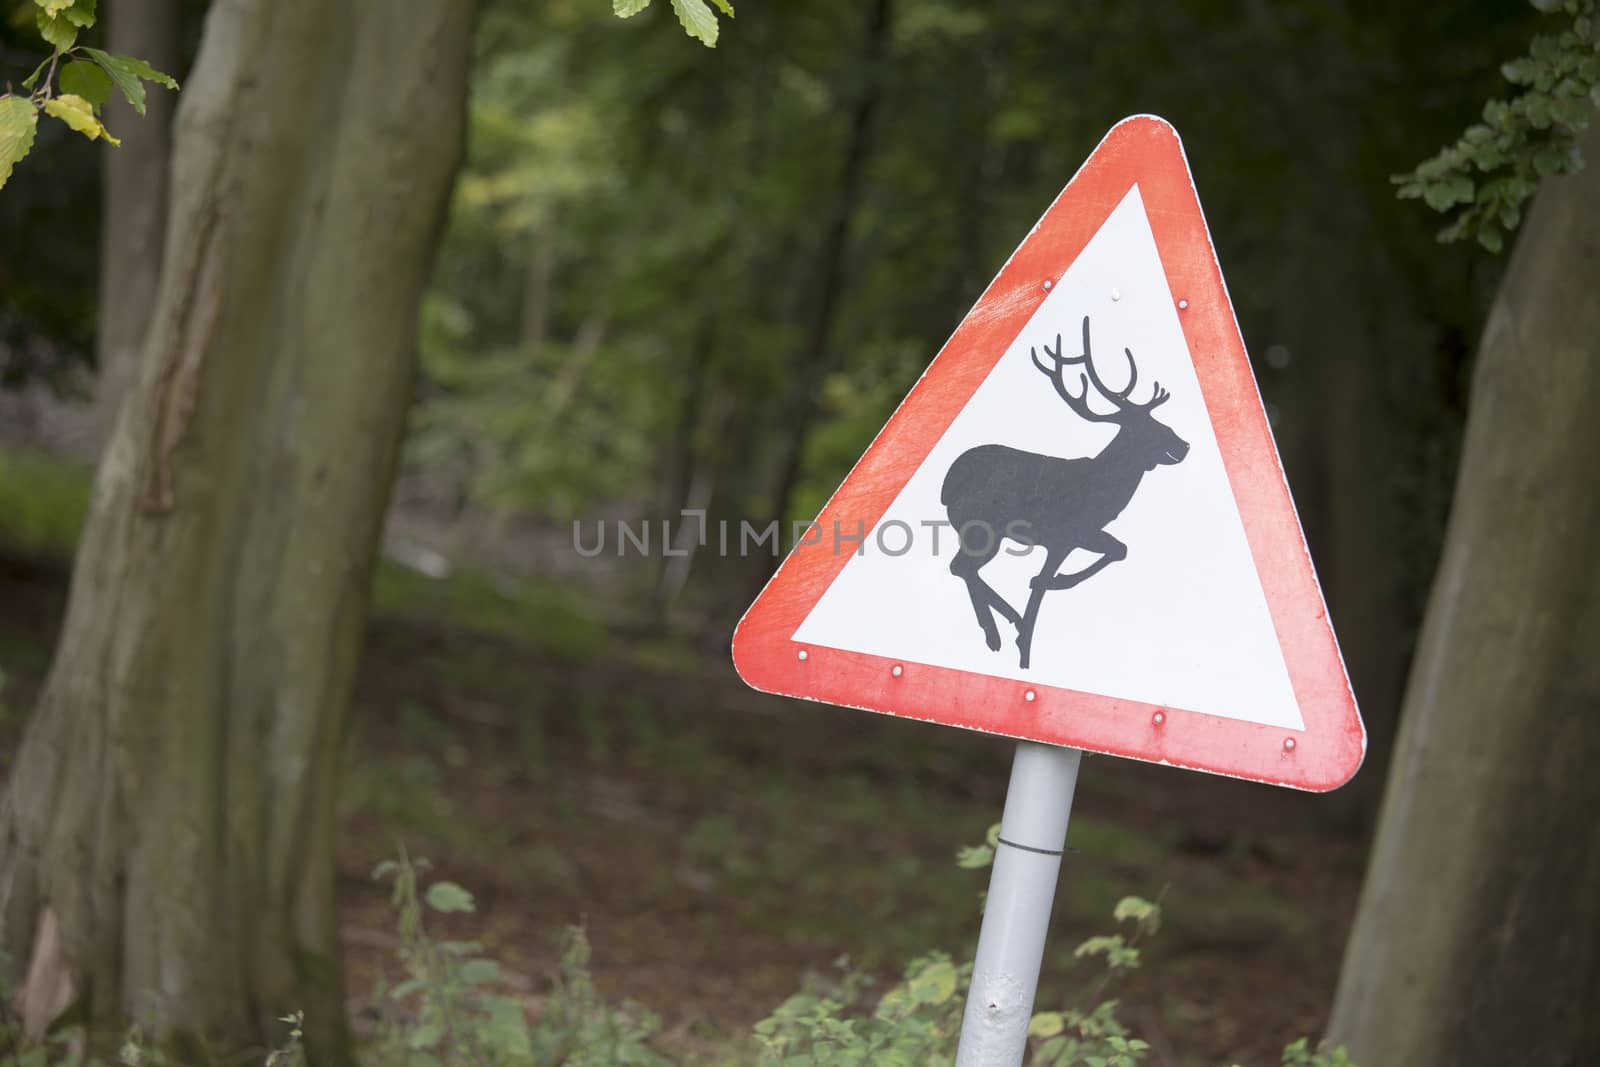 Beware of deer by mattkusb